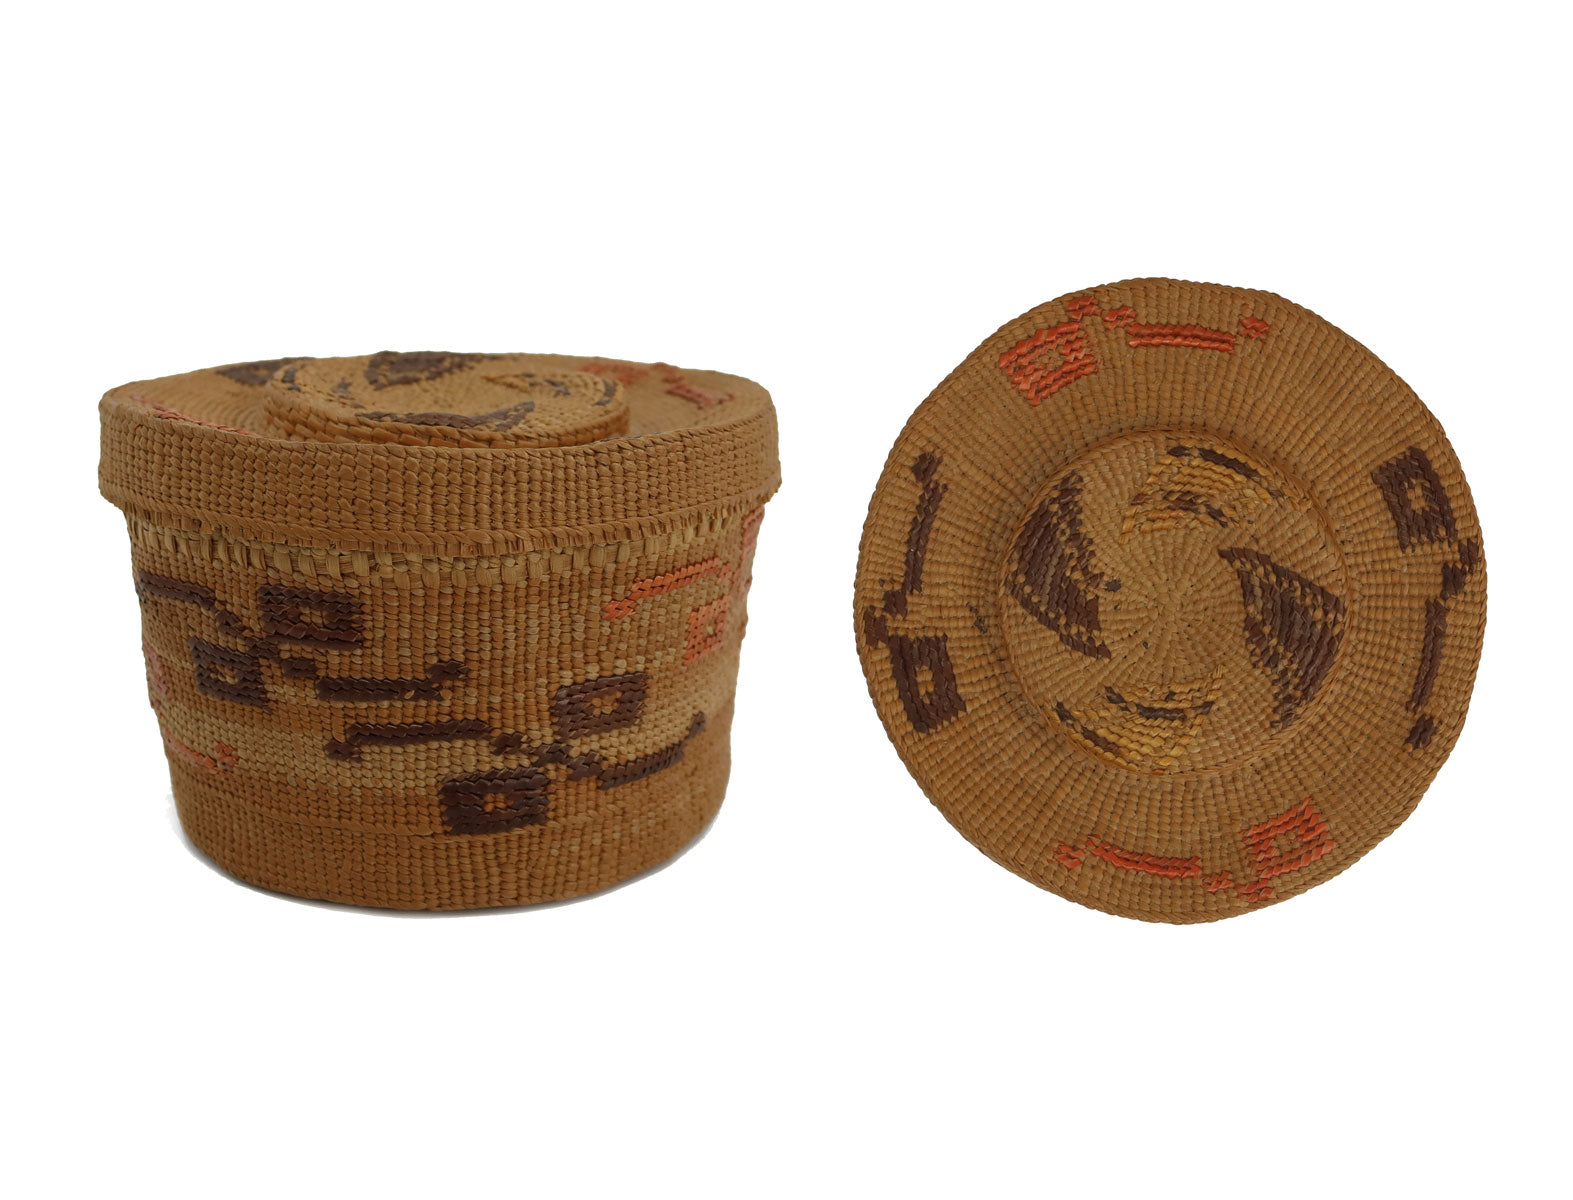 Tlingit Polychrome Lidded Rattle Top Basket c. 1900s, 2.5" x4" (SK92306-0822-001)